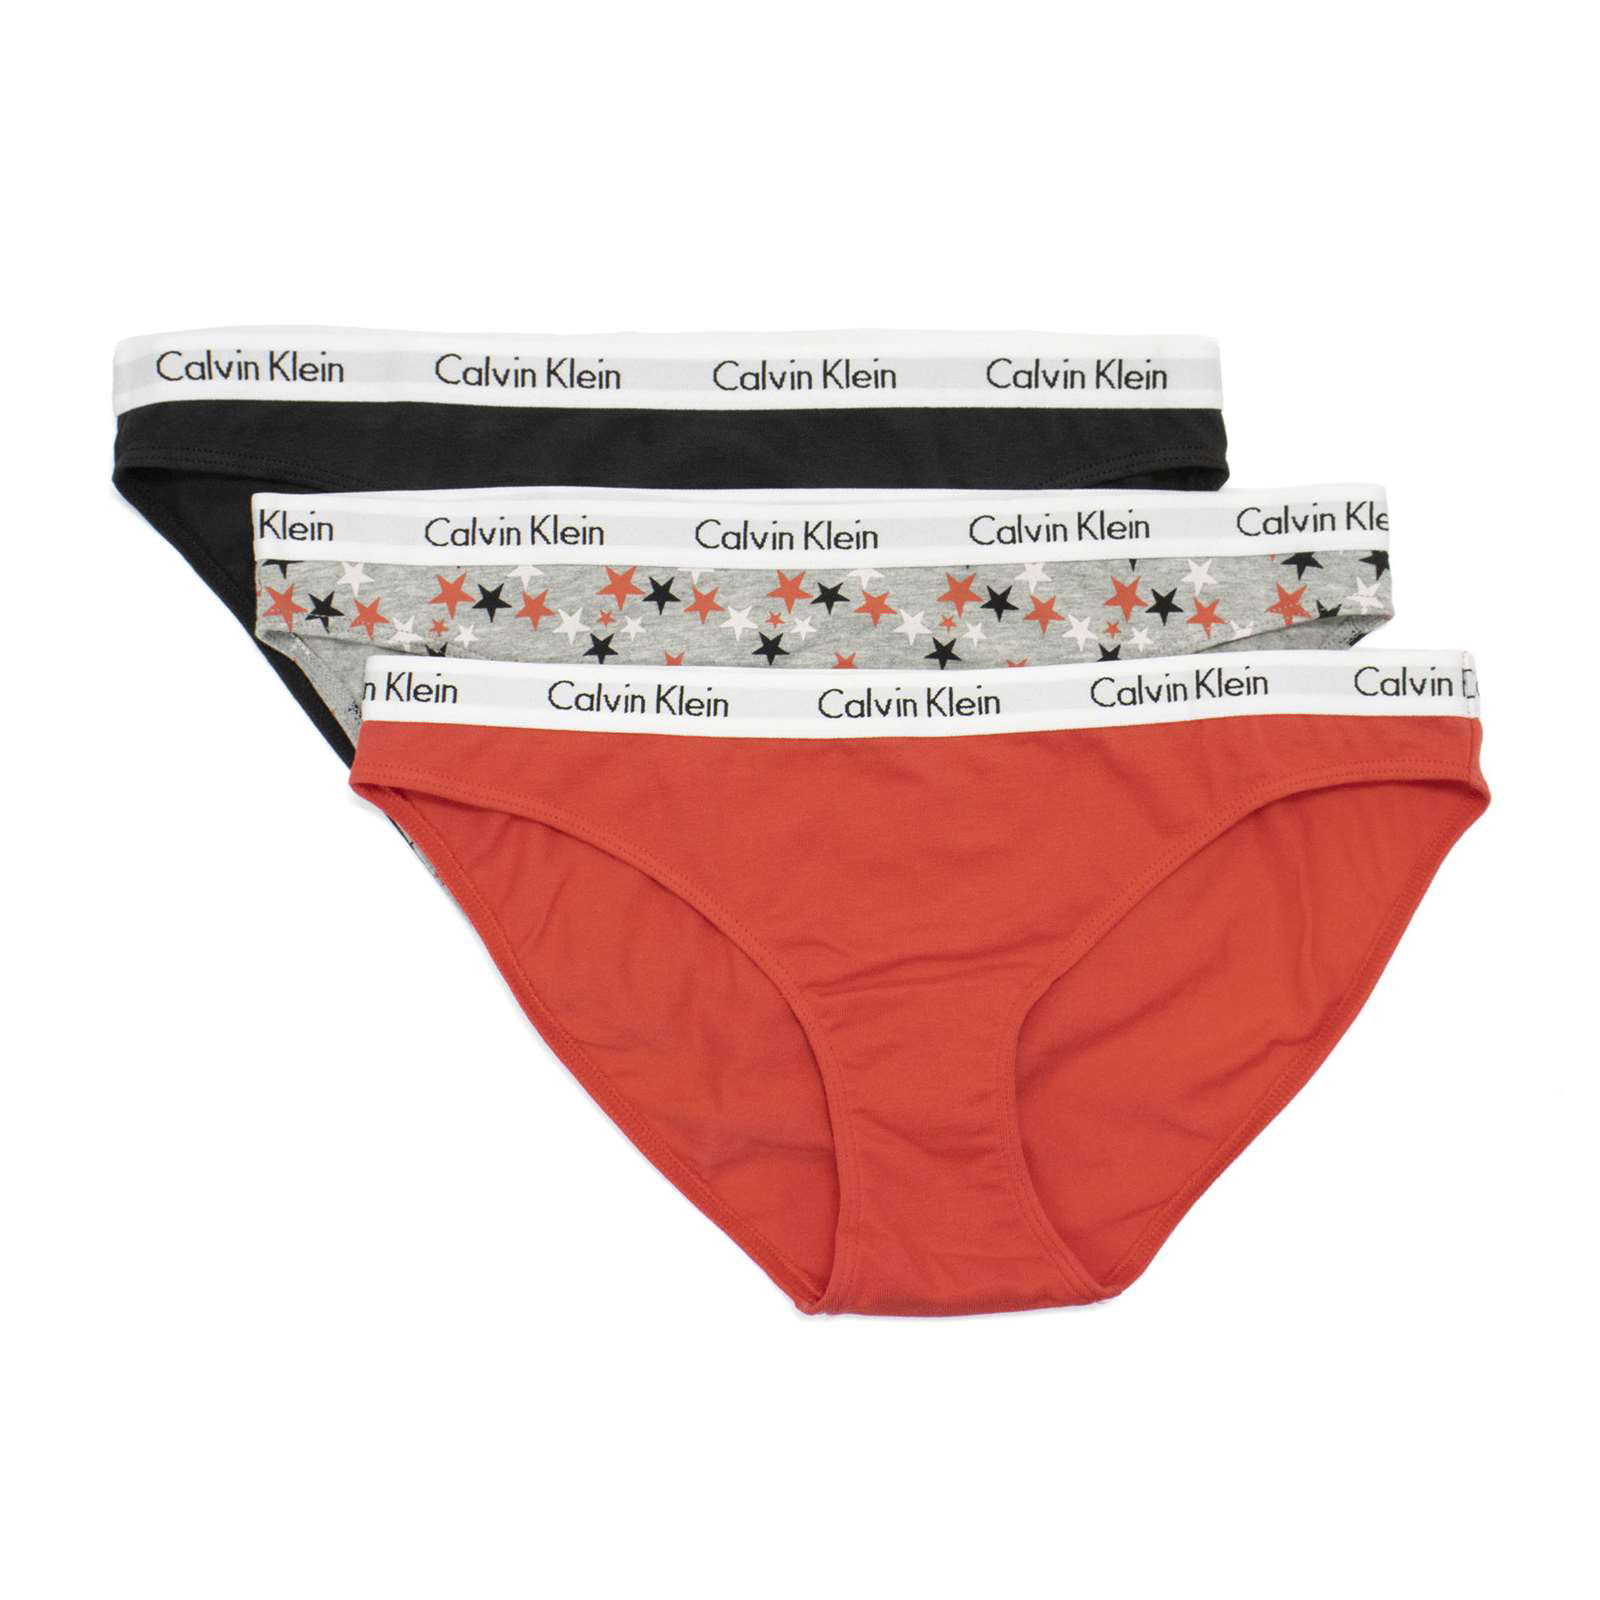 Calvin Klein Underwear Carousel 3 Pack Thong in Feeder Stripe Pale Orchid,  Snow Heather, & Black